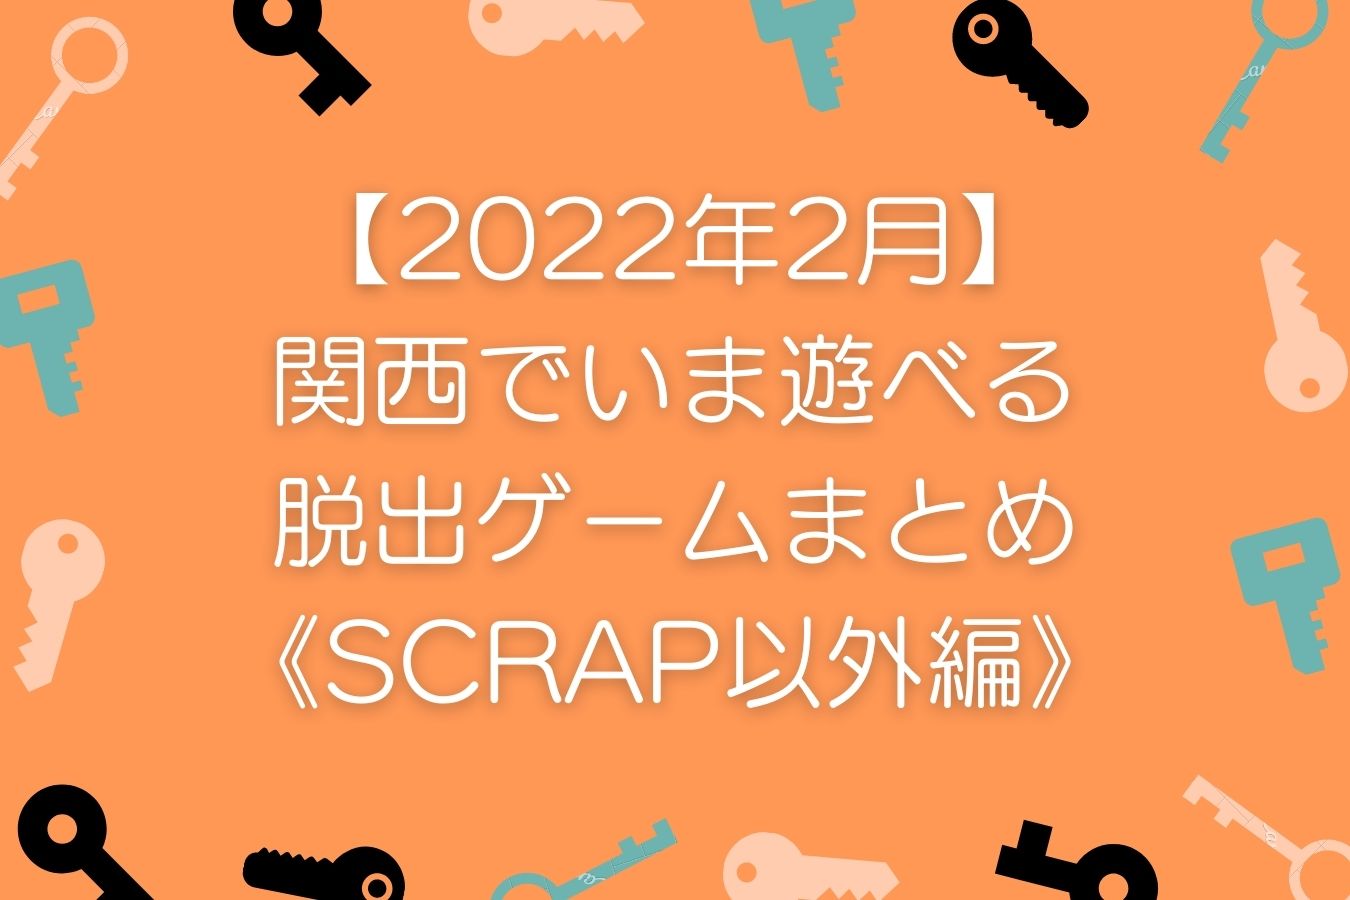 【2022年2月】-関西でいま遊べる-リアル脱出ゲームまとめ-《SCRAP以外編》